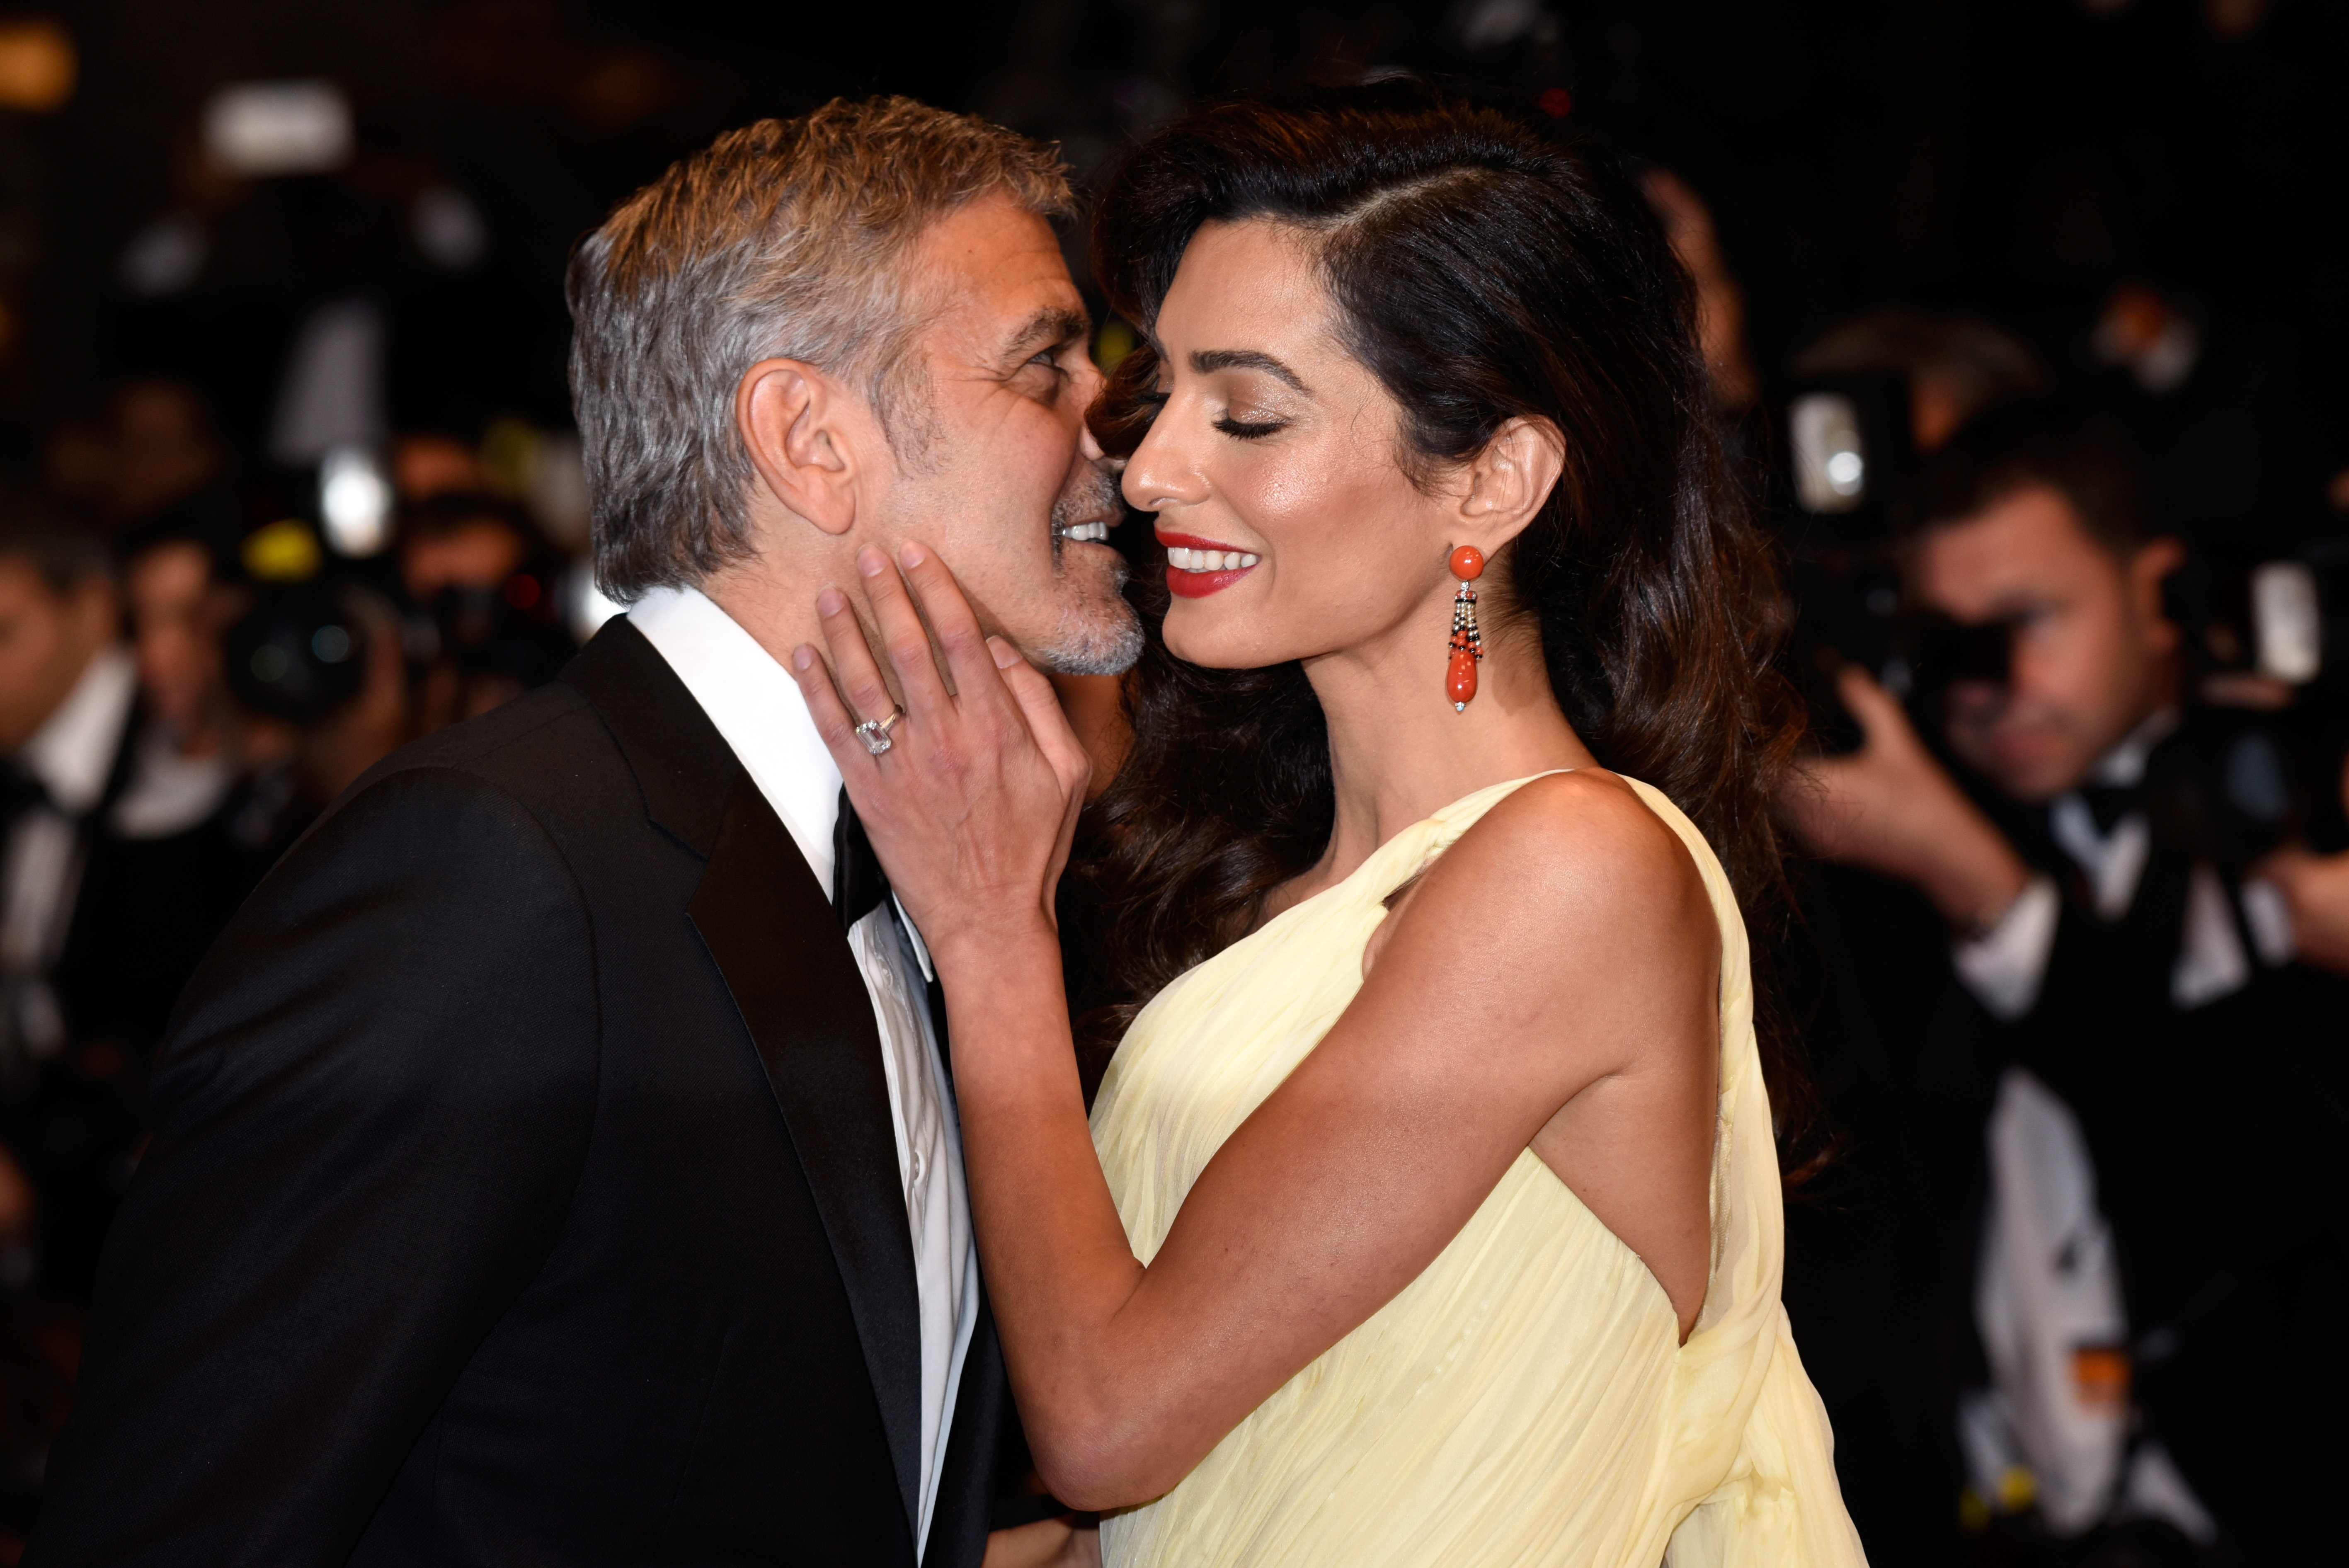 George Clooney et sa femme Amal Clooney assistent à la première de "Money Monster", 2016 | Source : Getty Images